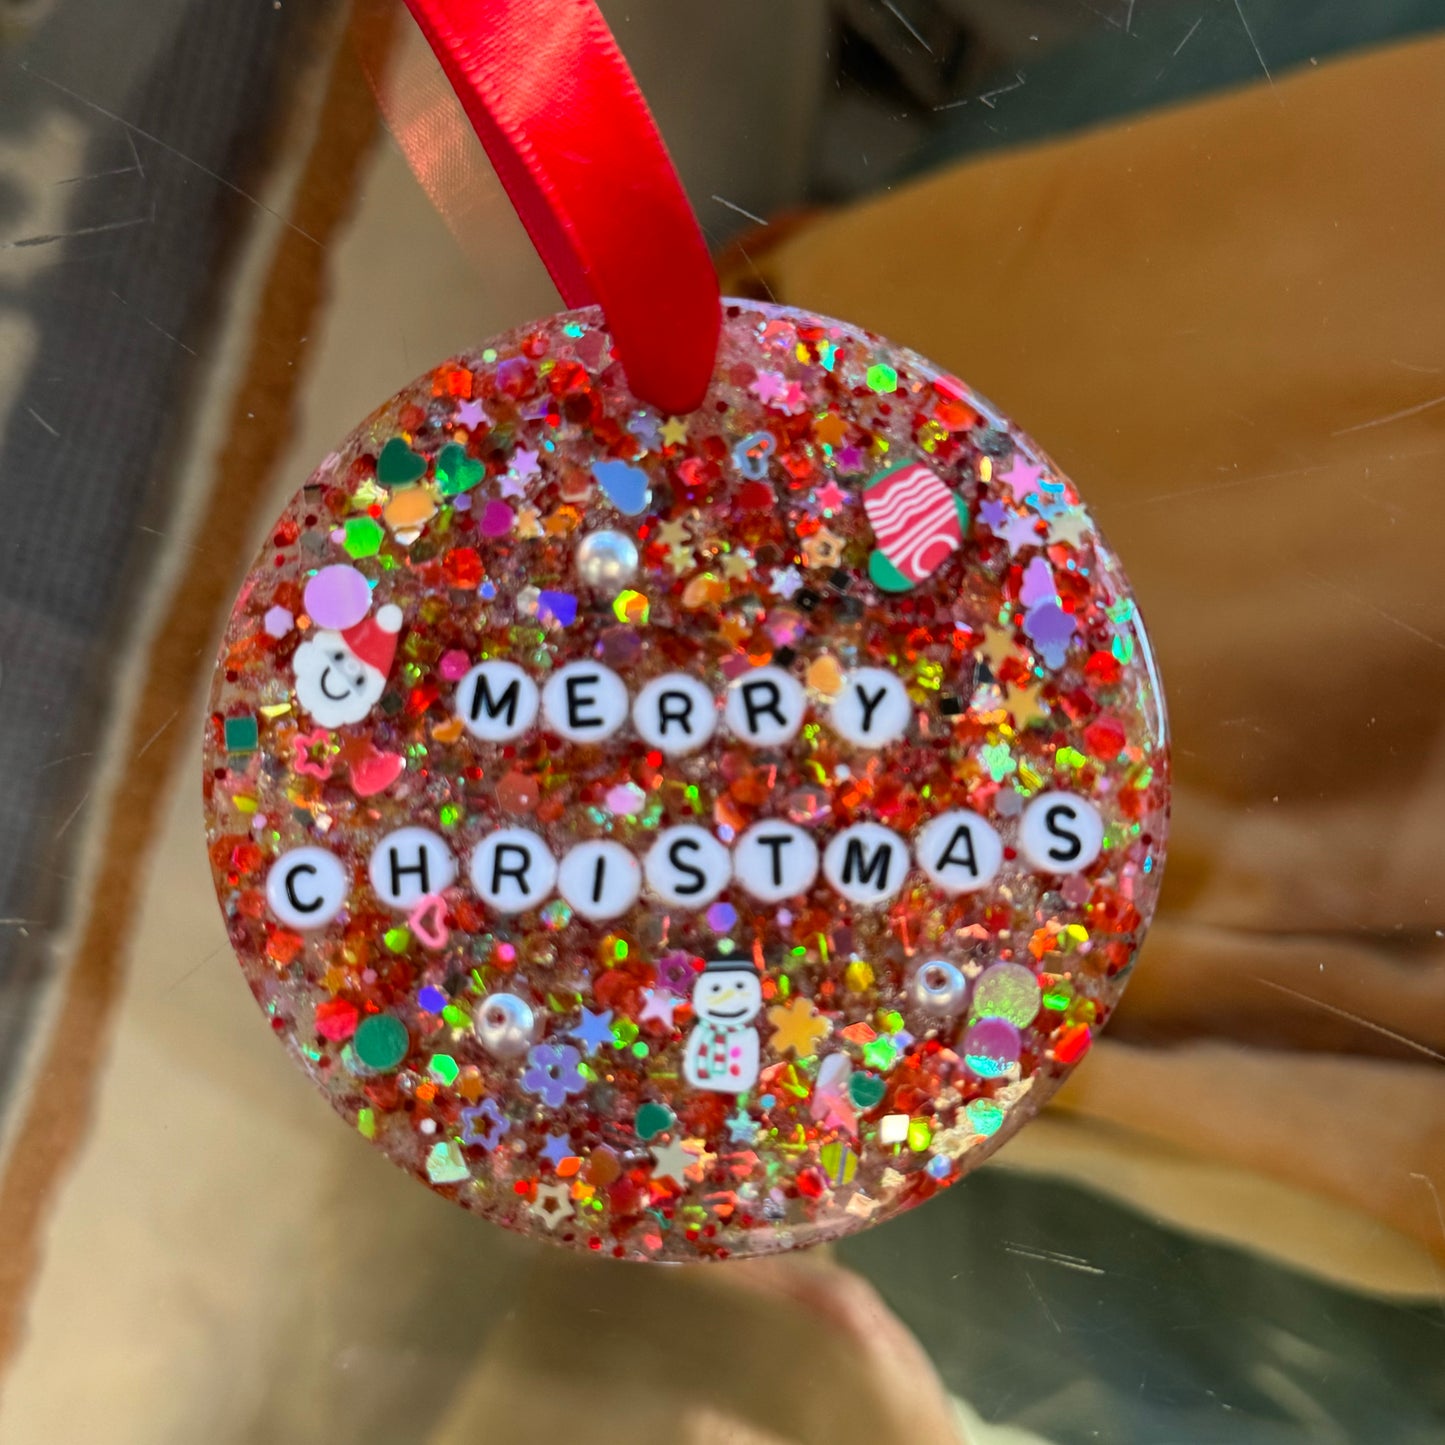 Sweaty Confetti Sparkly Ornaments